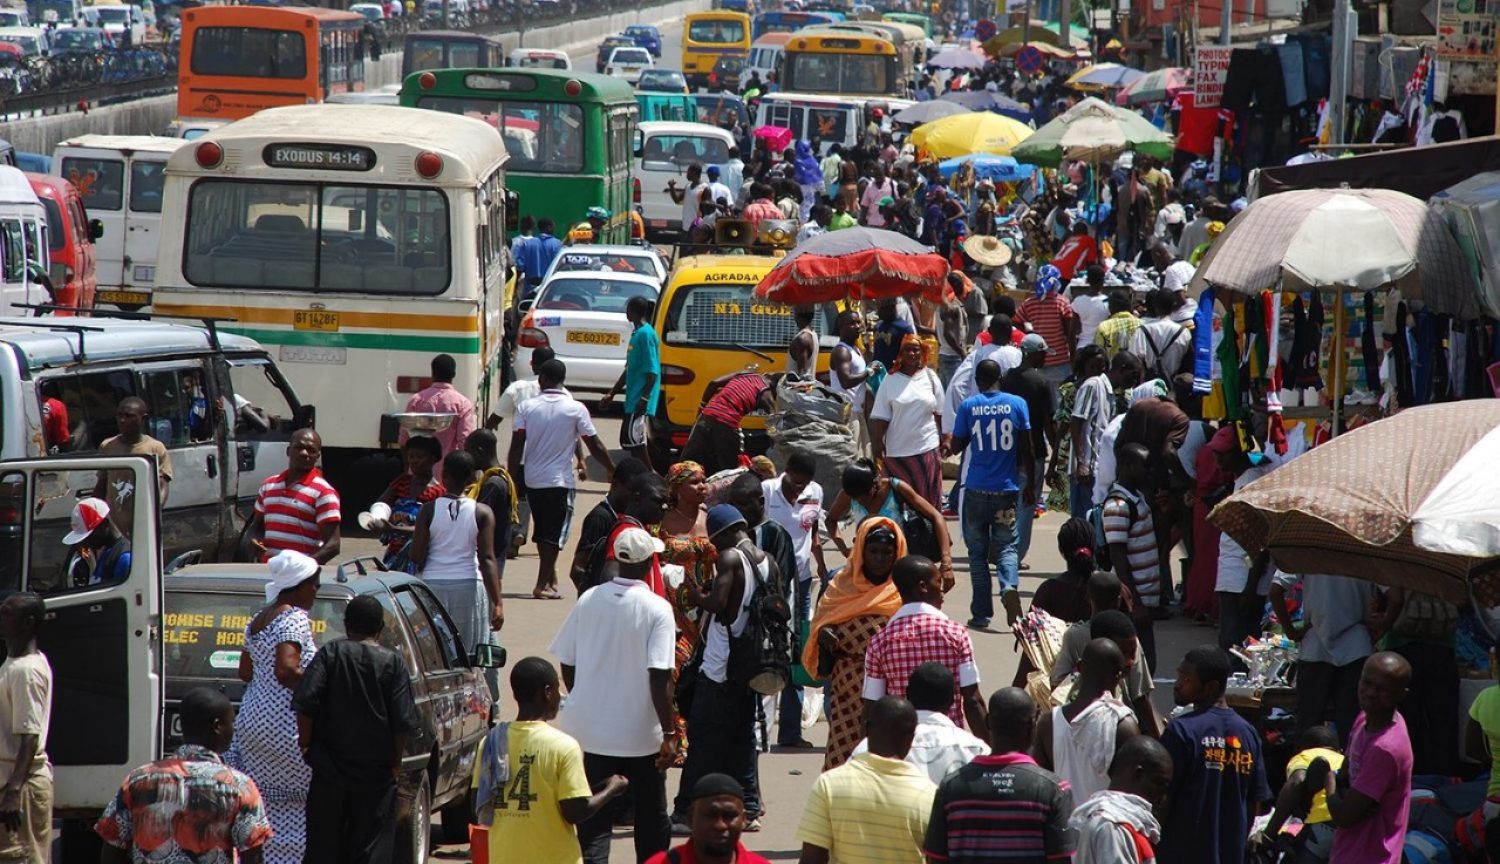 A crowded street in Ghana